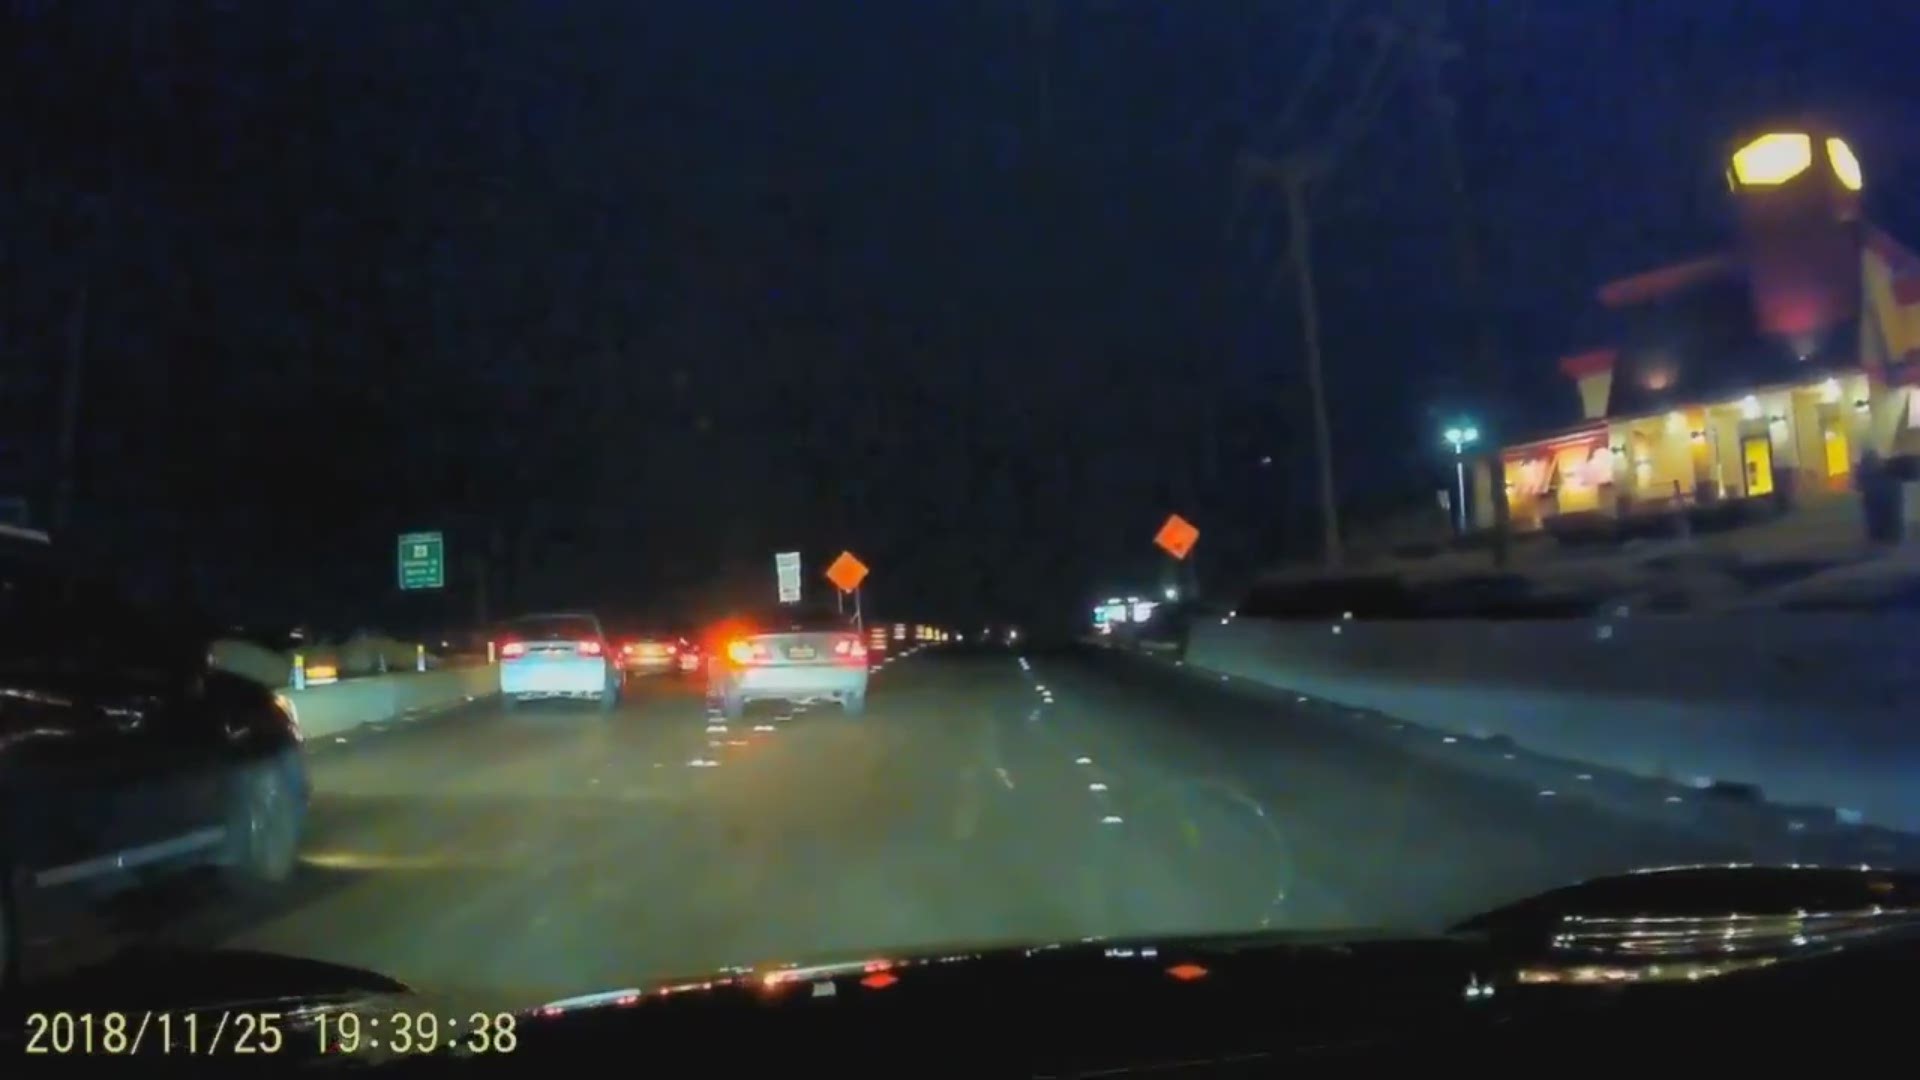 RAW: Dash-cam video shows man point gun at driver